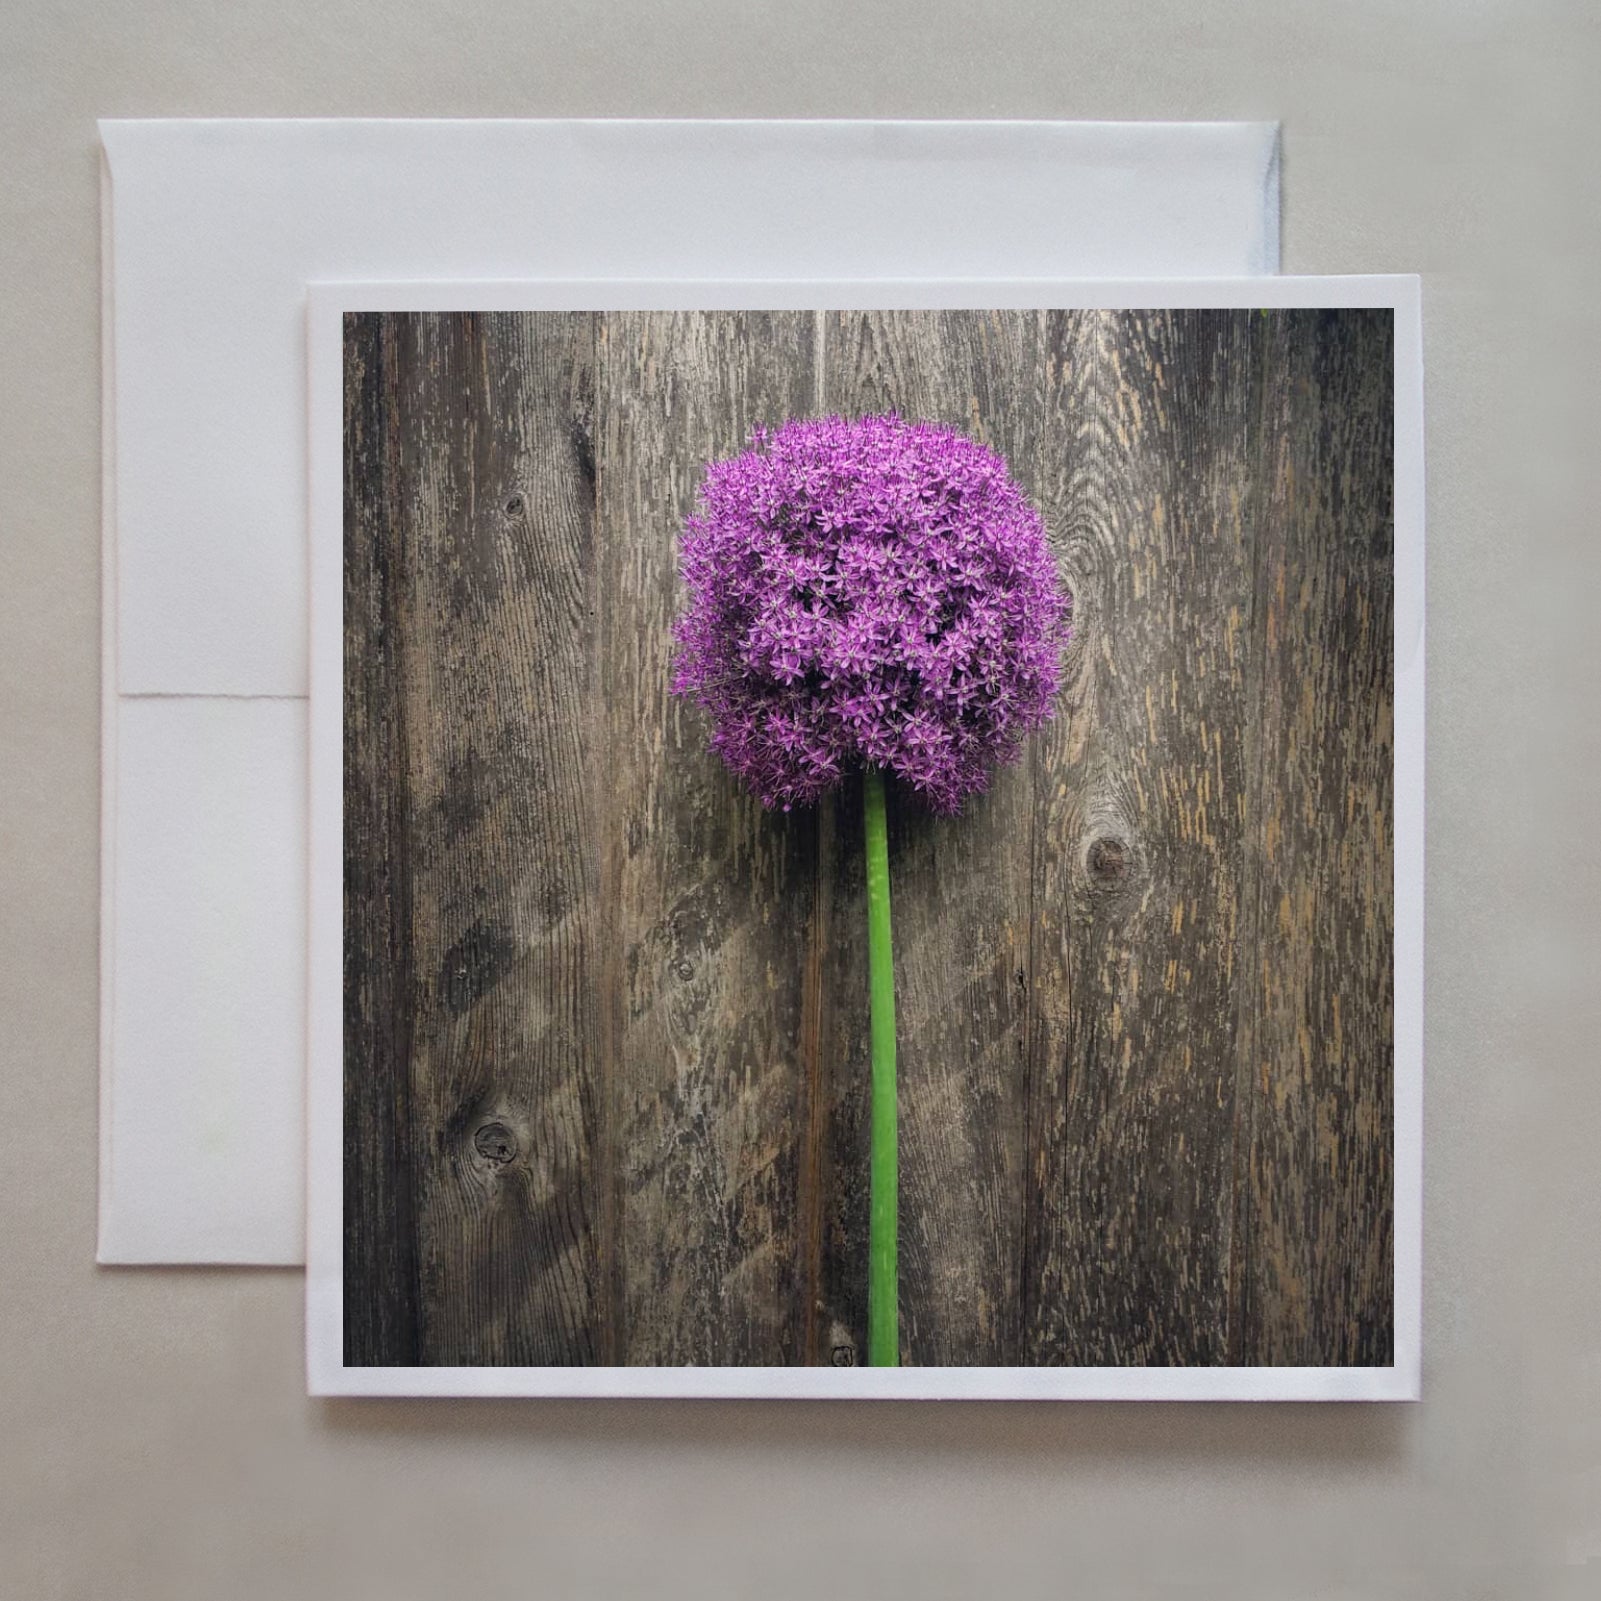 A beautiful purple flower notecard lying delicately on a wooden board by photographer Jennifer Echols.